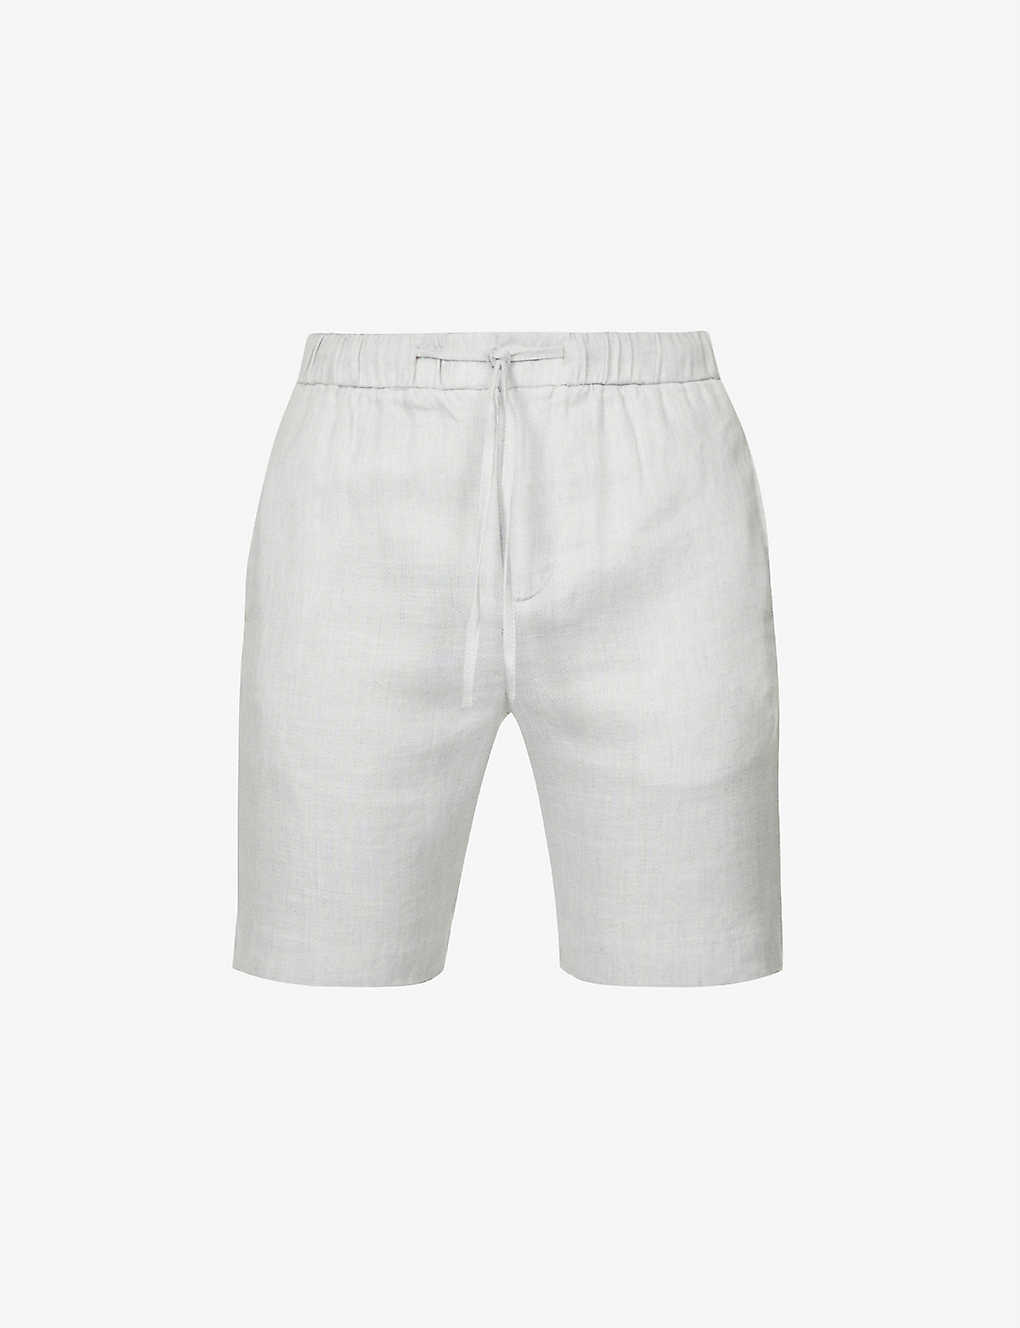 Frescobol Carioca "sport"亚麻短裤 In White